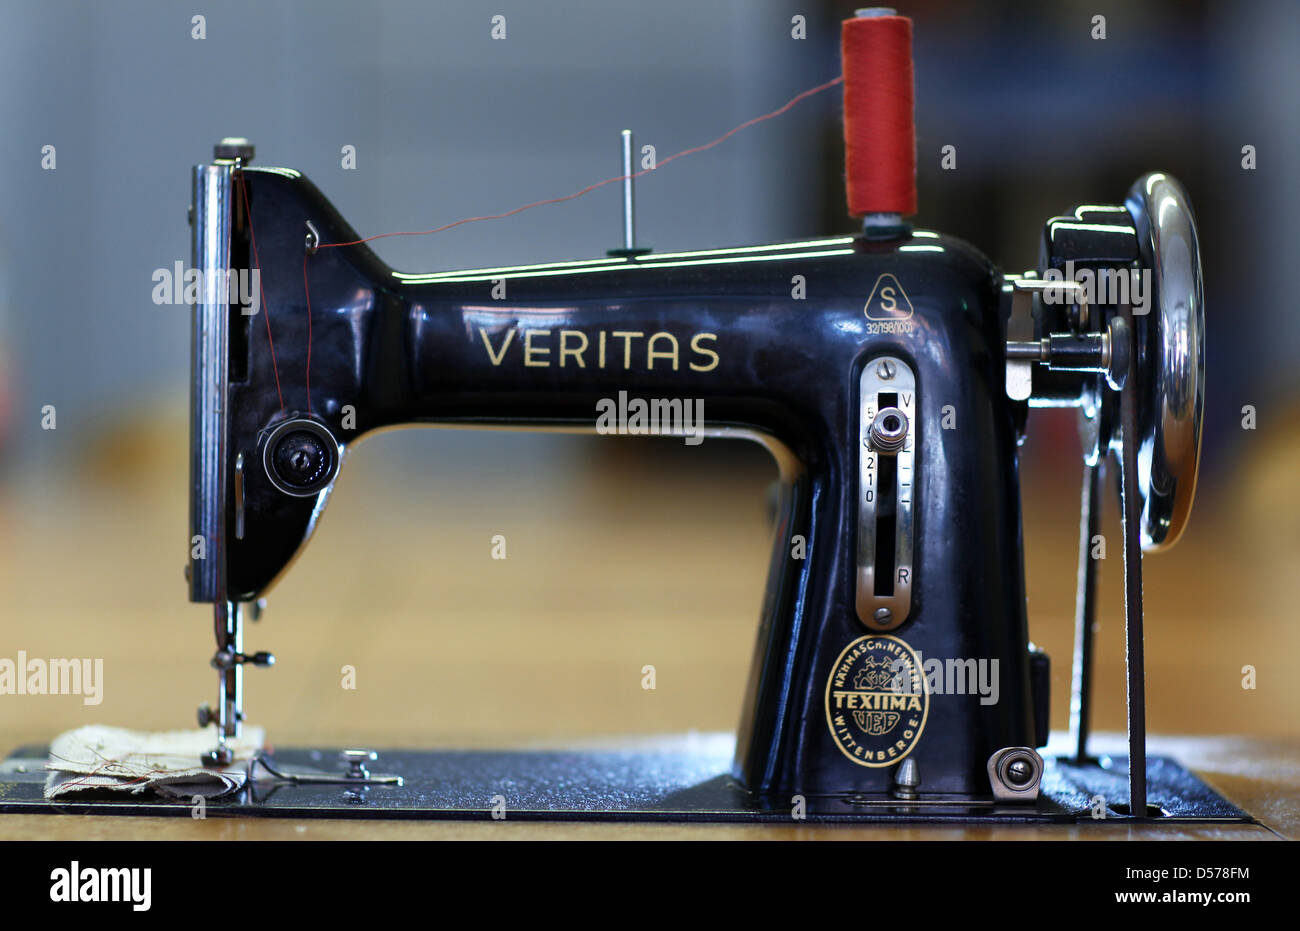 Un visitante del museo de la máquina de coser ojos una máquina de coser de  Veritas que data de 1952 en Wittenberge, Alemania, el 22 de abril de 2010.  El museo pone